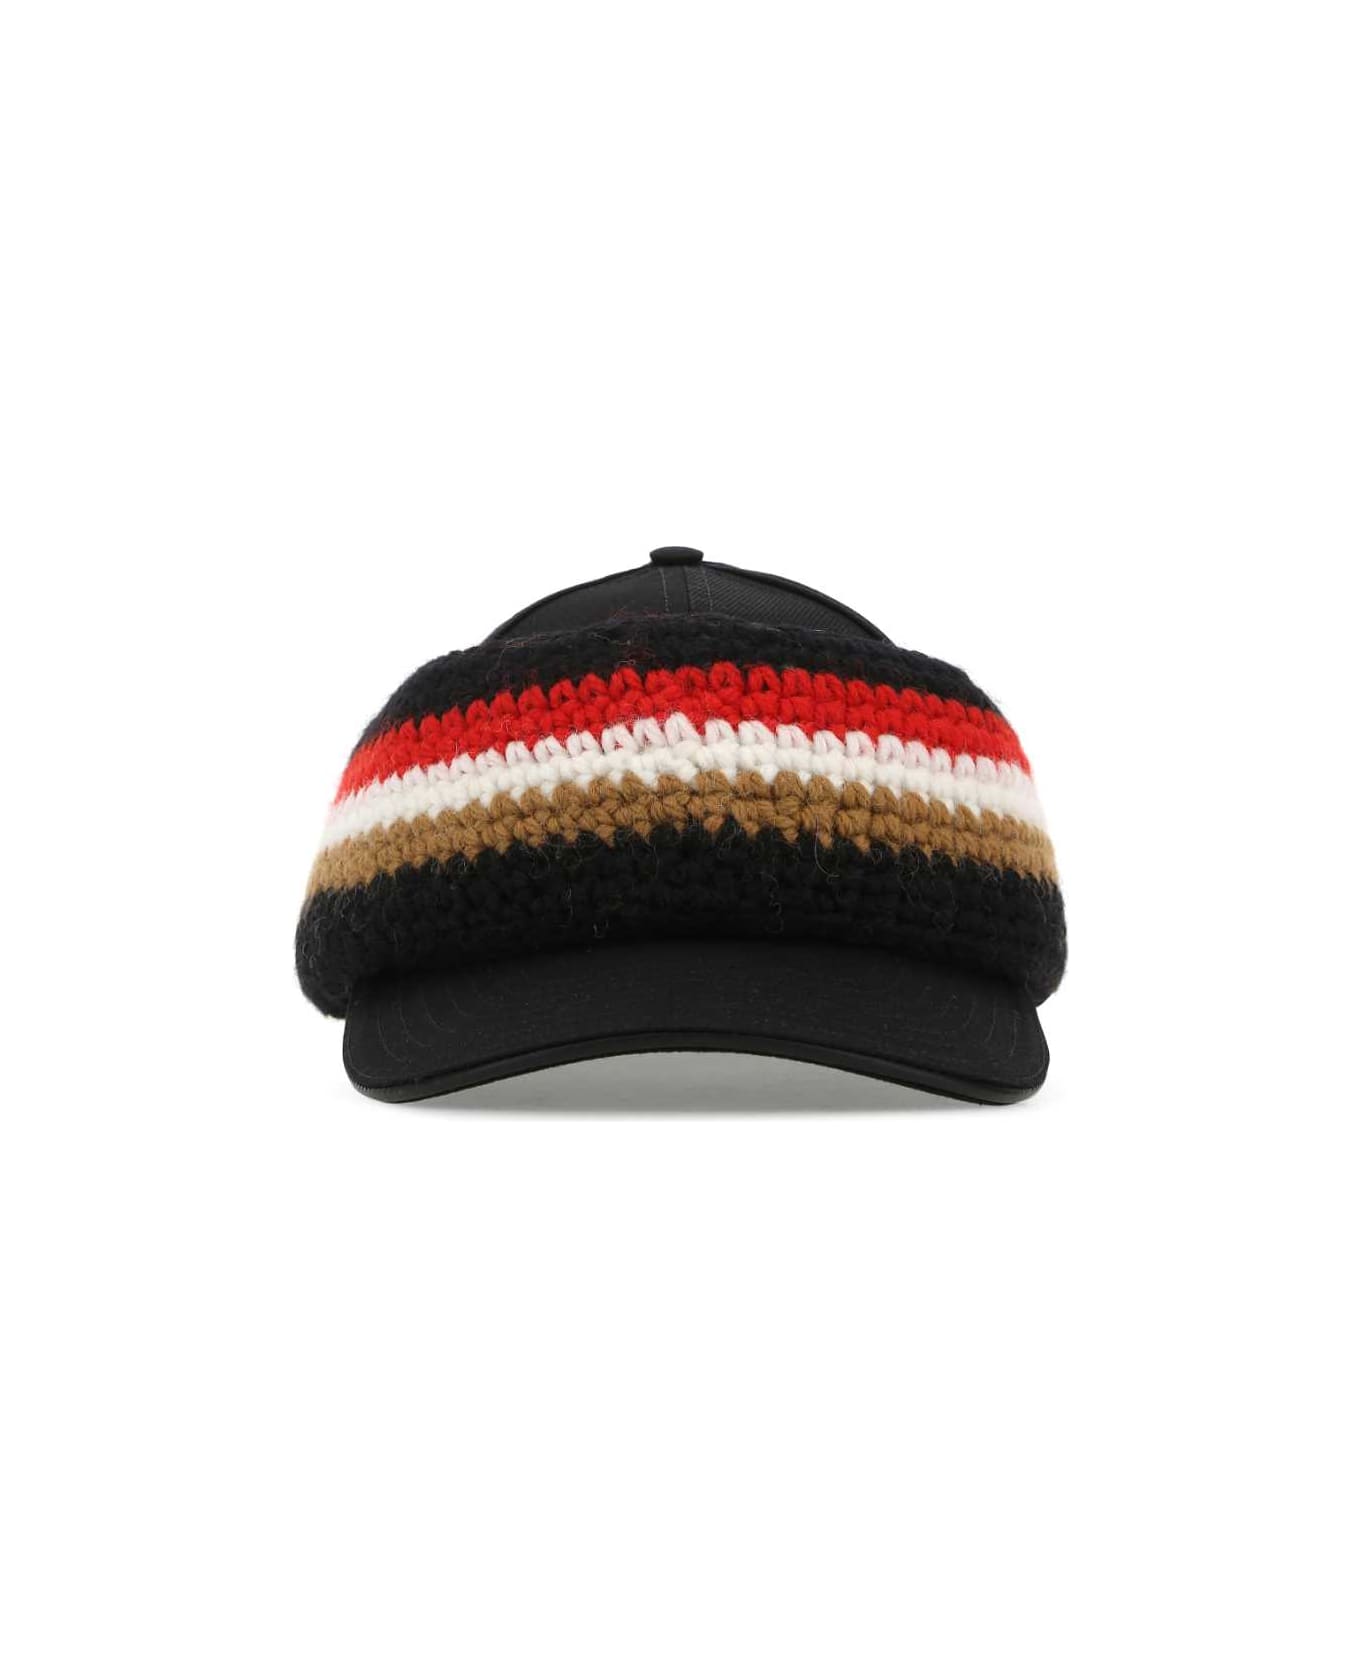 Burberry Black Cotton Hat - A1189